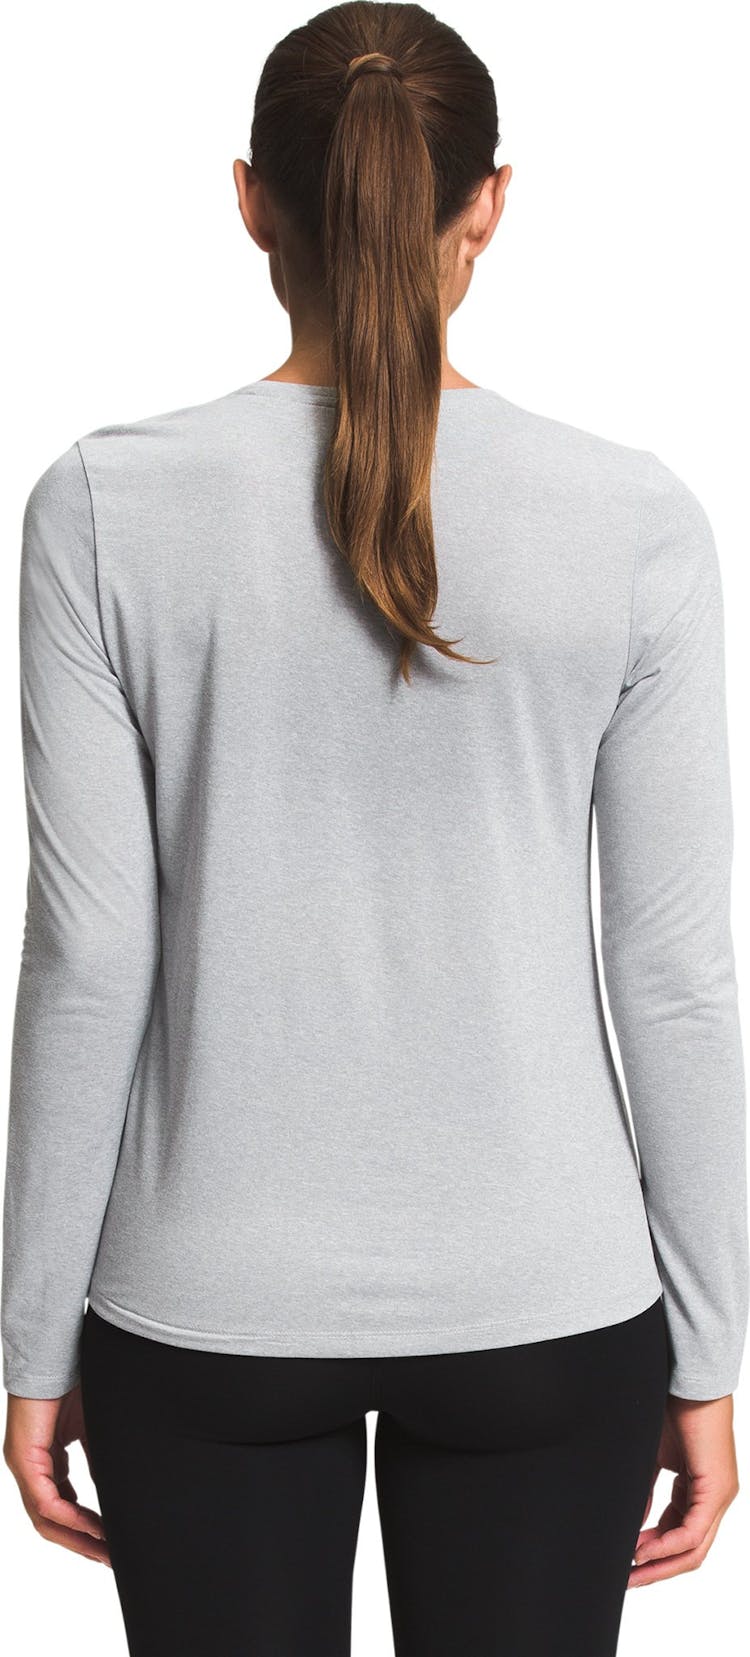 Numéro de l'image de la galerie de produits 3 pour le produit T-shirt à manches longues Elevation - Femme